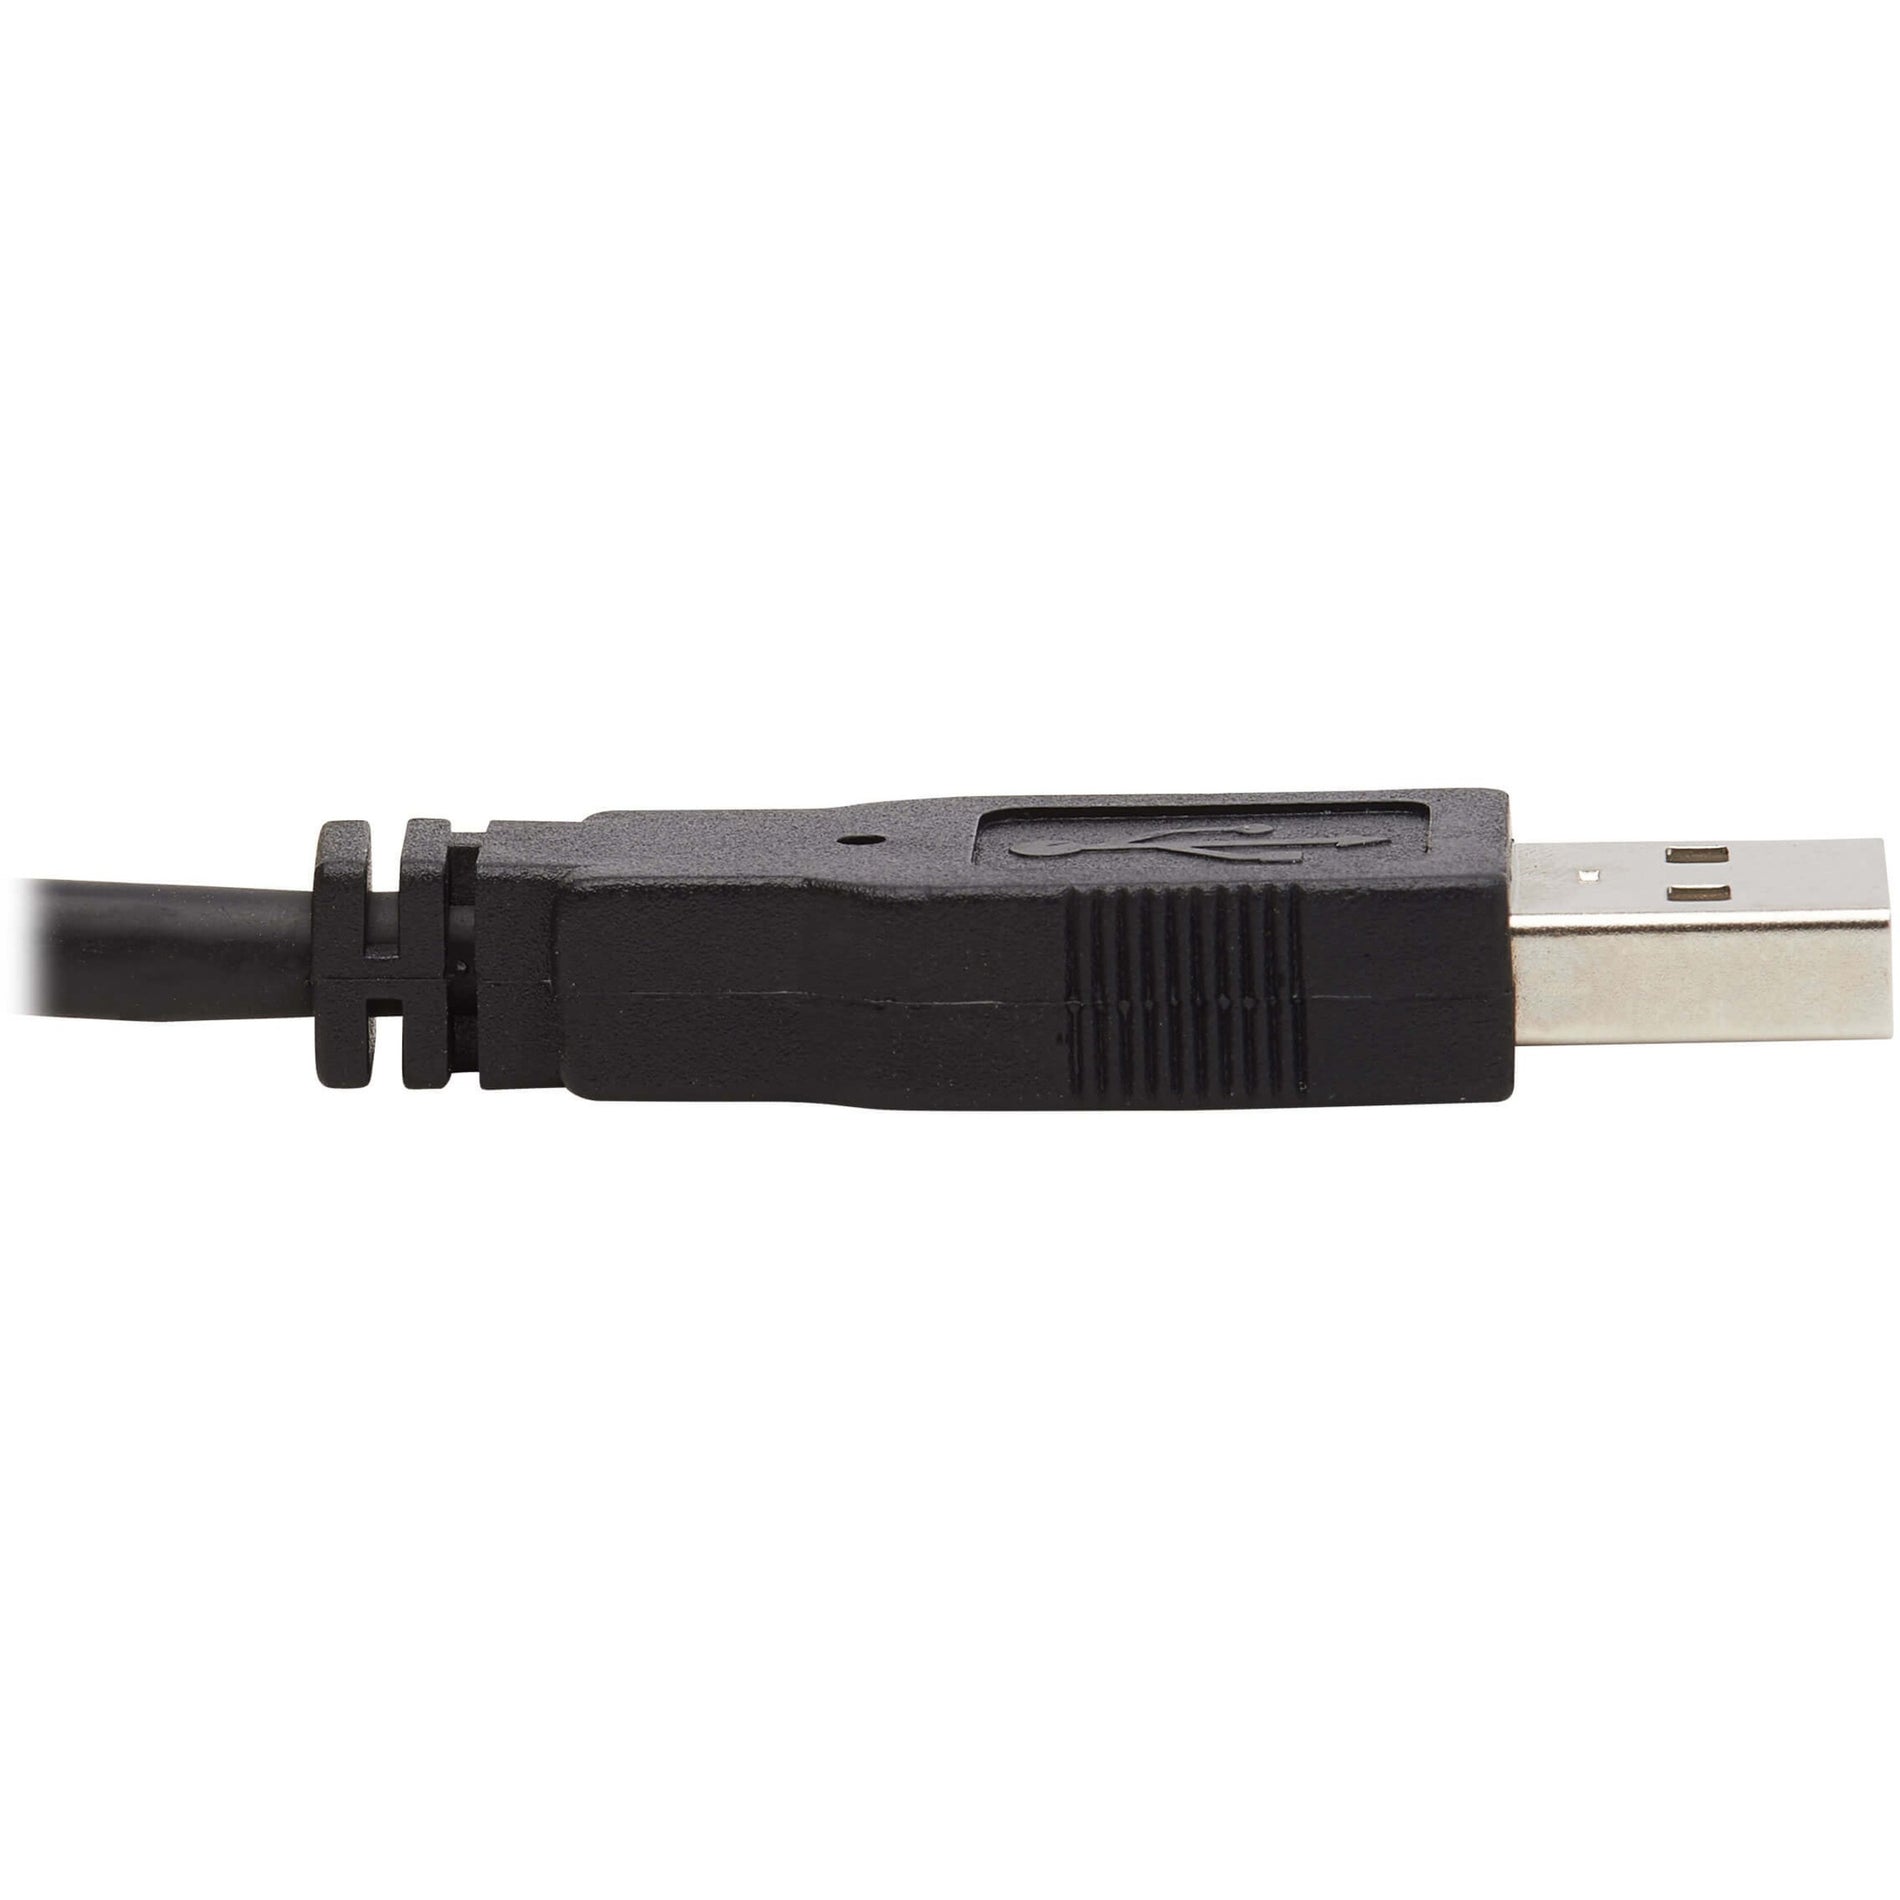 Tripp Lite P783-006-DP KVM ケーブル、デュアル DisplayPort、4K 6ft ブランド名: Tripp Lite を翻訳すると「トリップライト」となります。